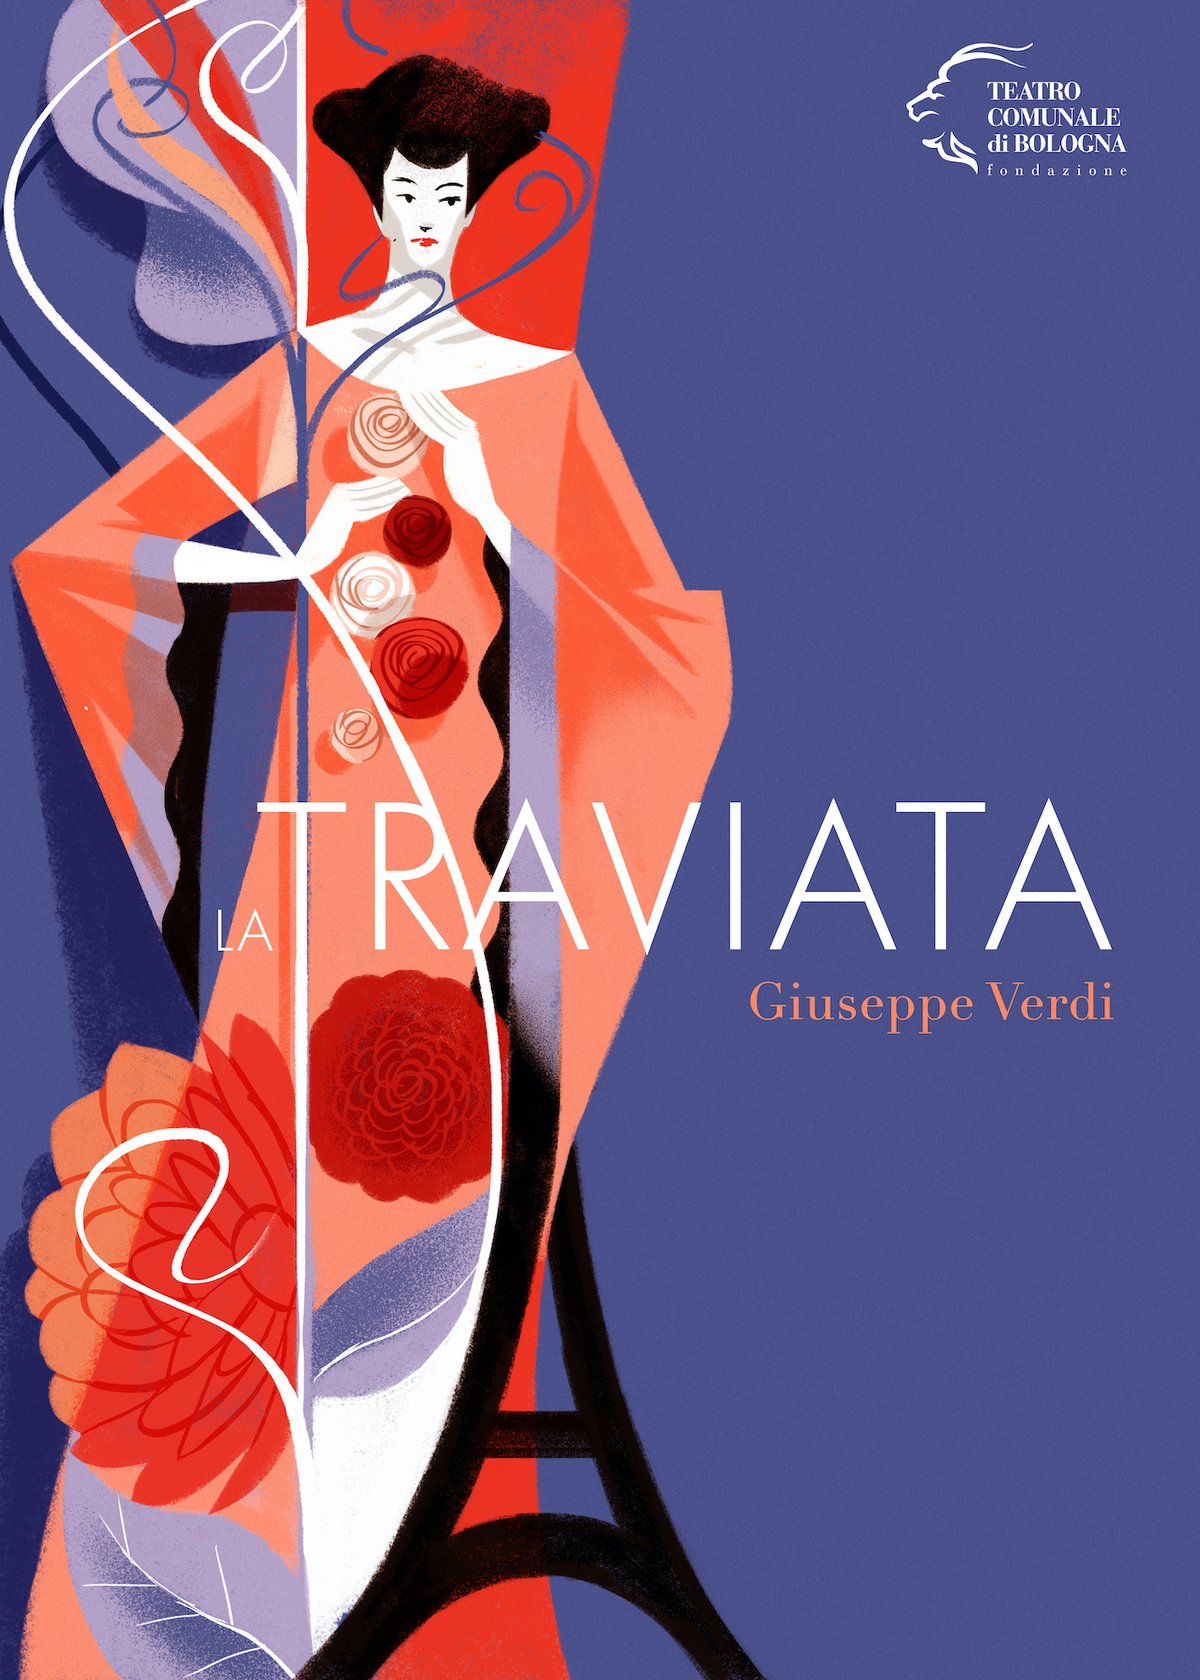 "La traviata"